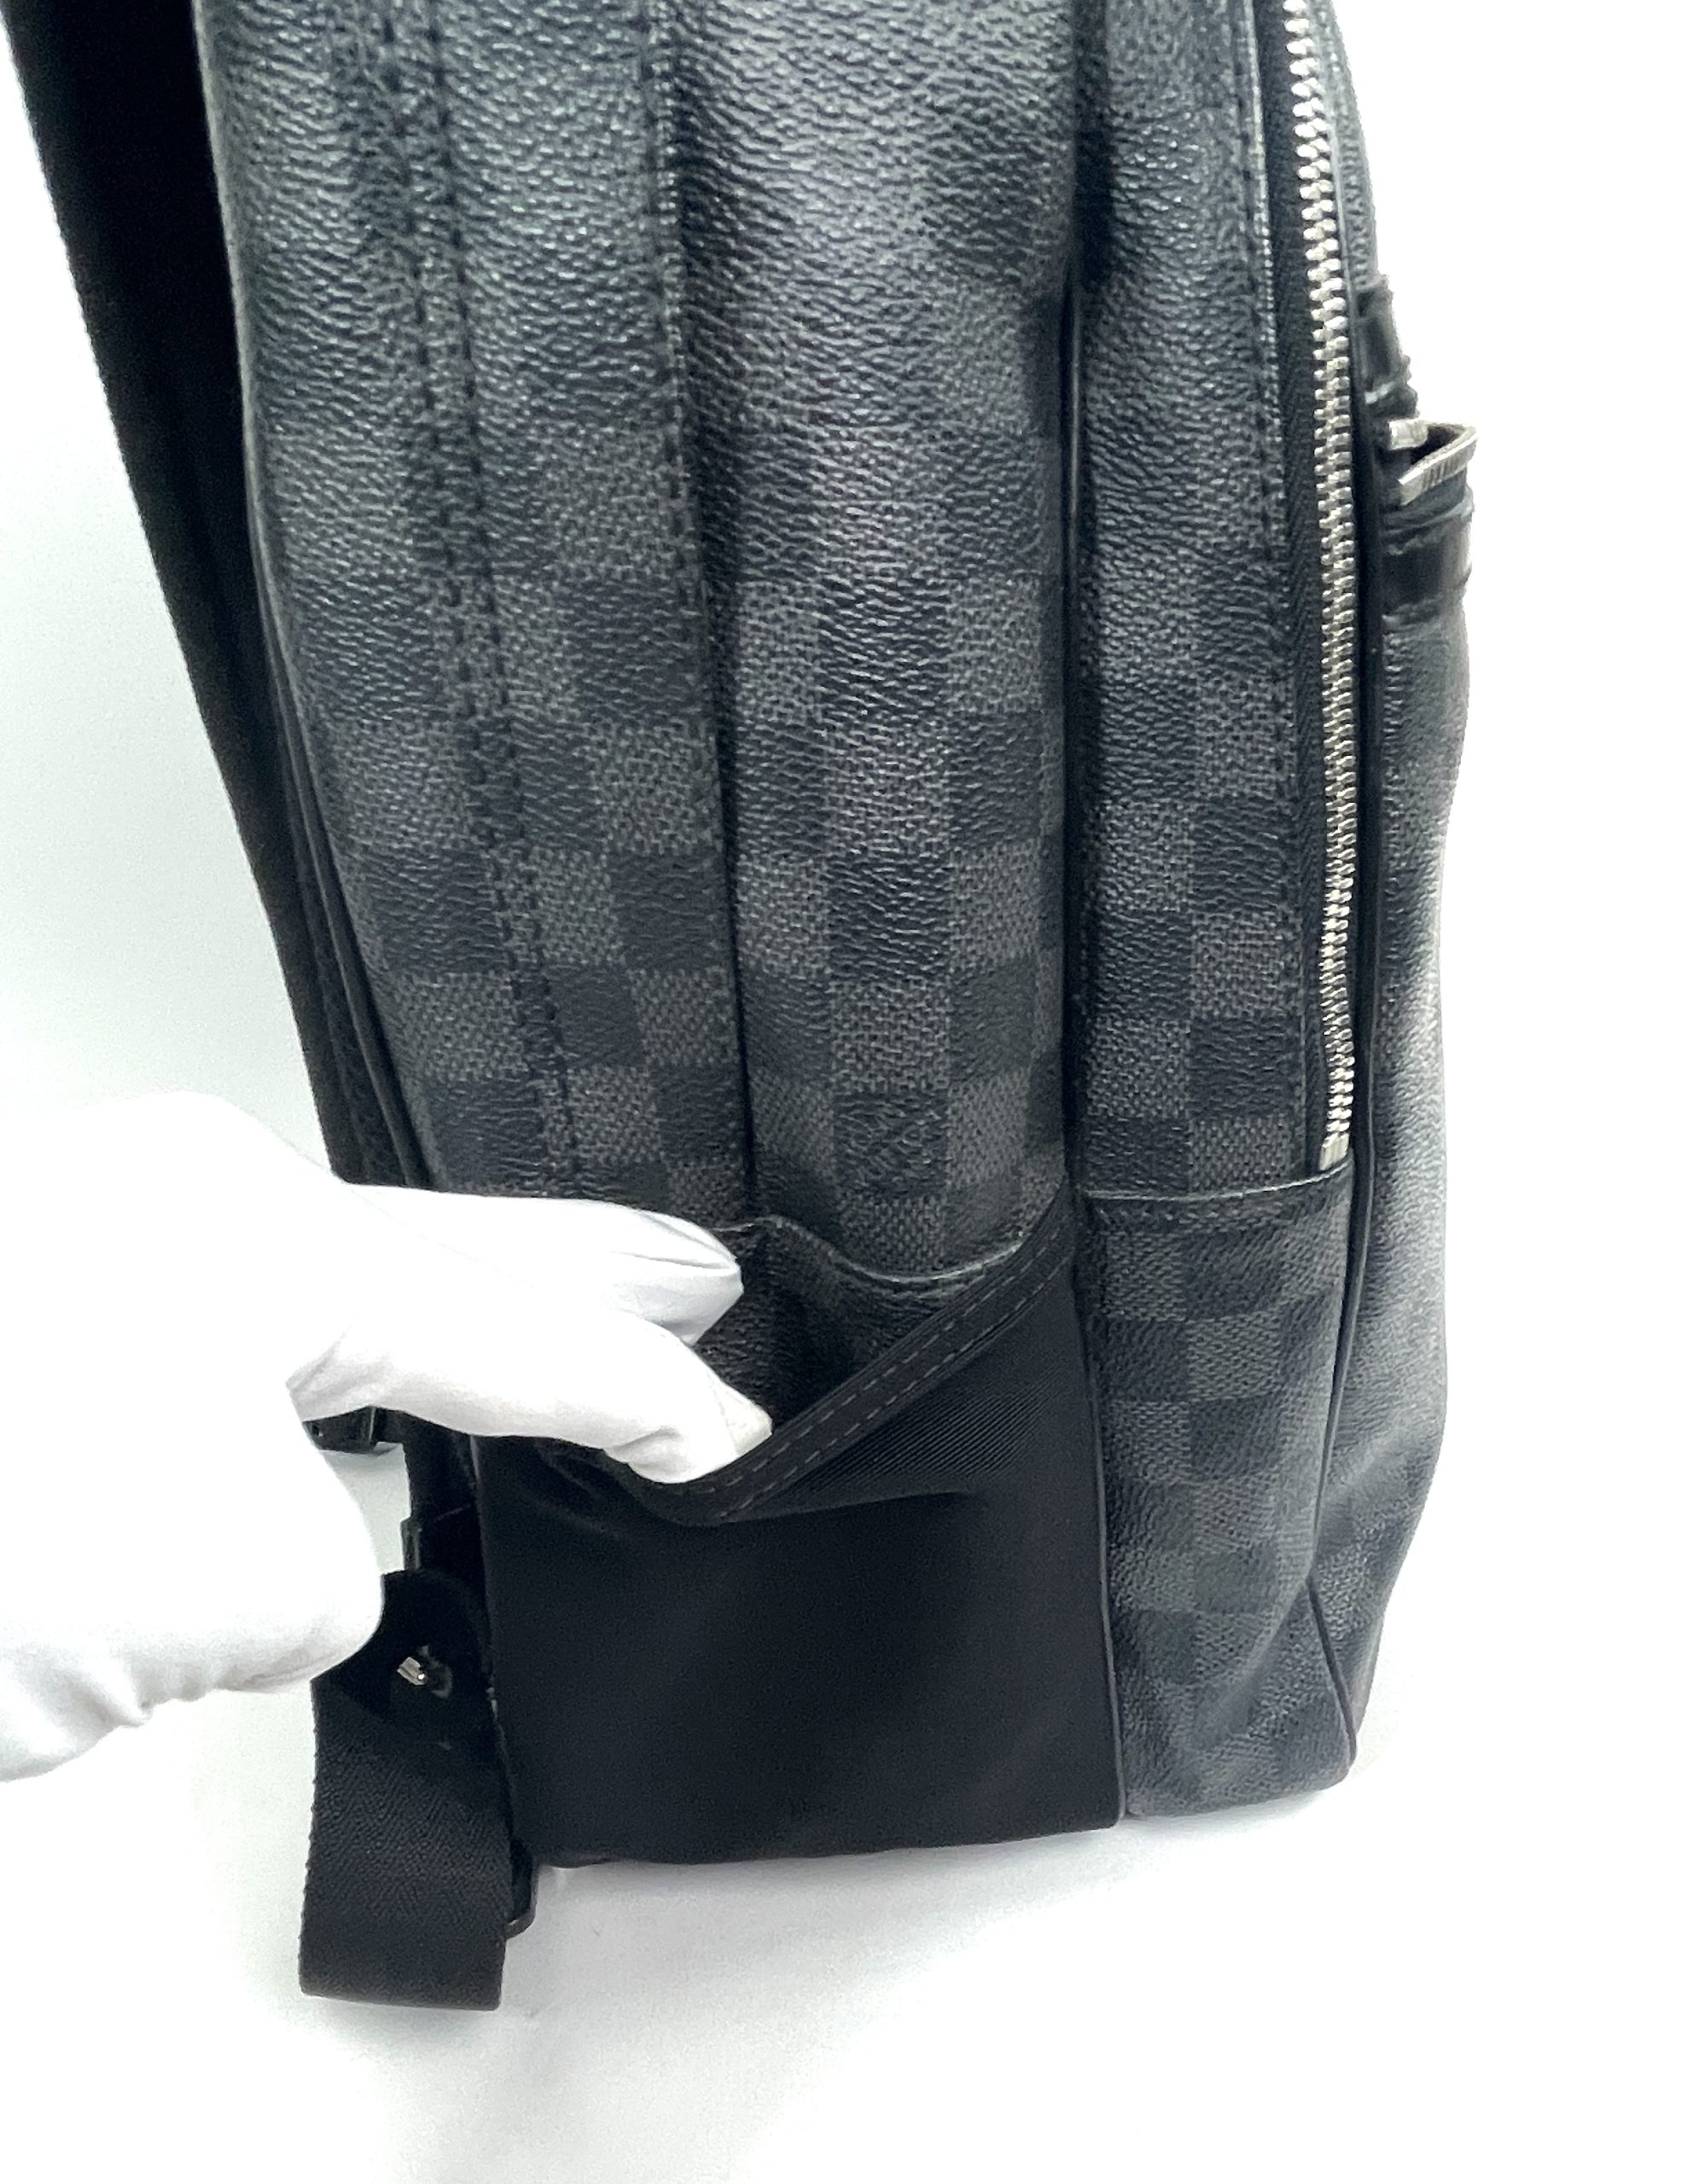 Louis Vuitton Michael Backpack NM Noir Damier Graphite (Review) 